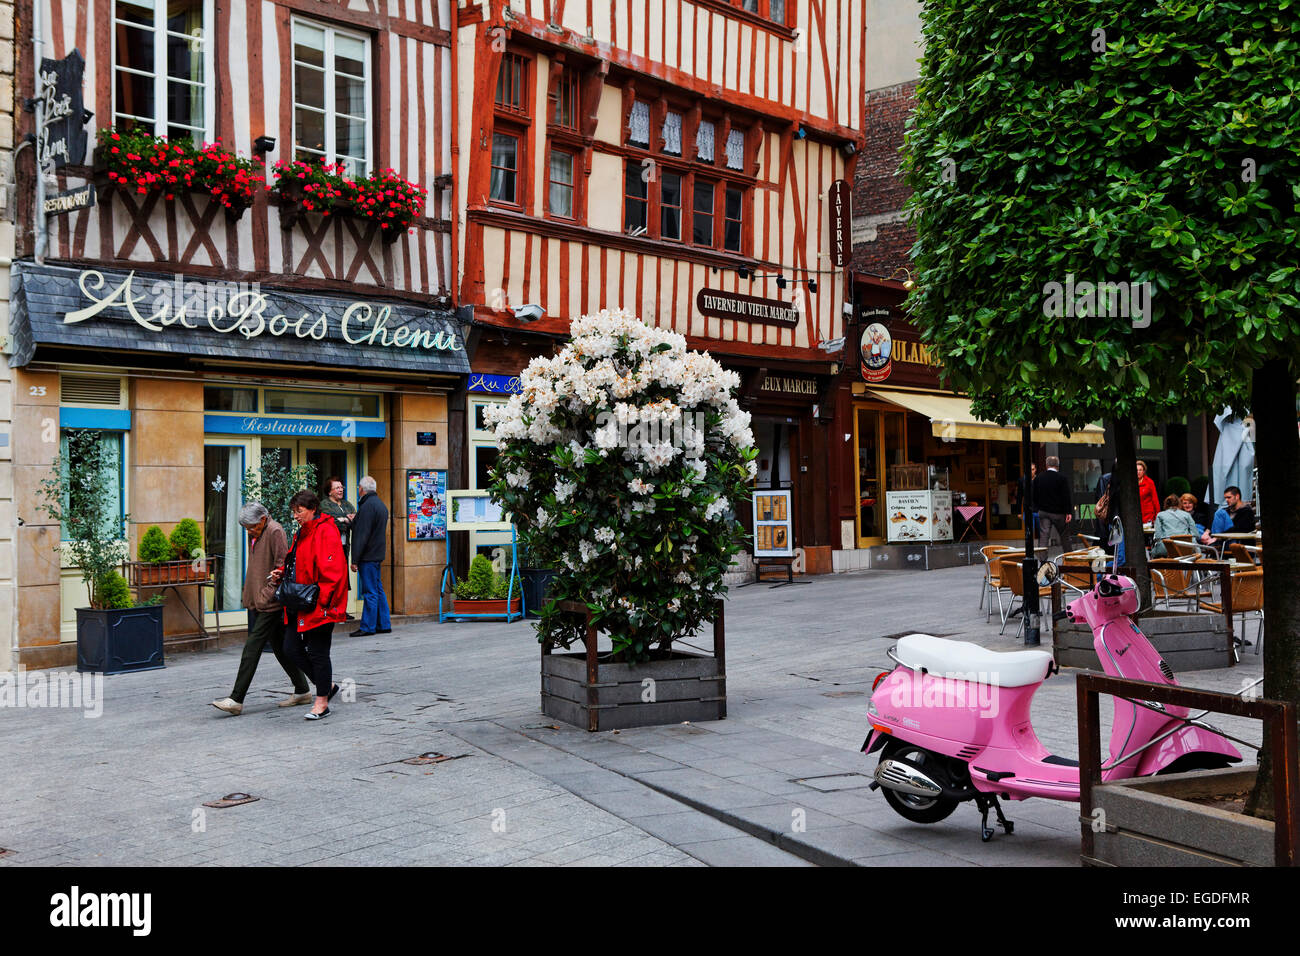 Place de la Pucelle d'Orleans, Rouen, Seine-Maritime, Normandy, France Stock Photo